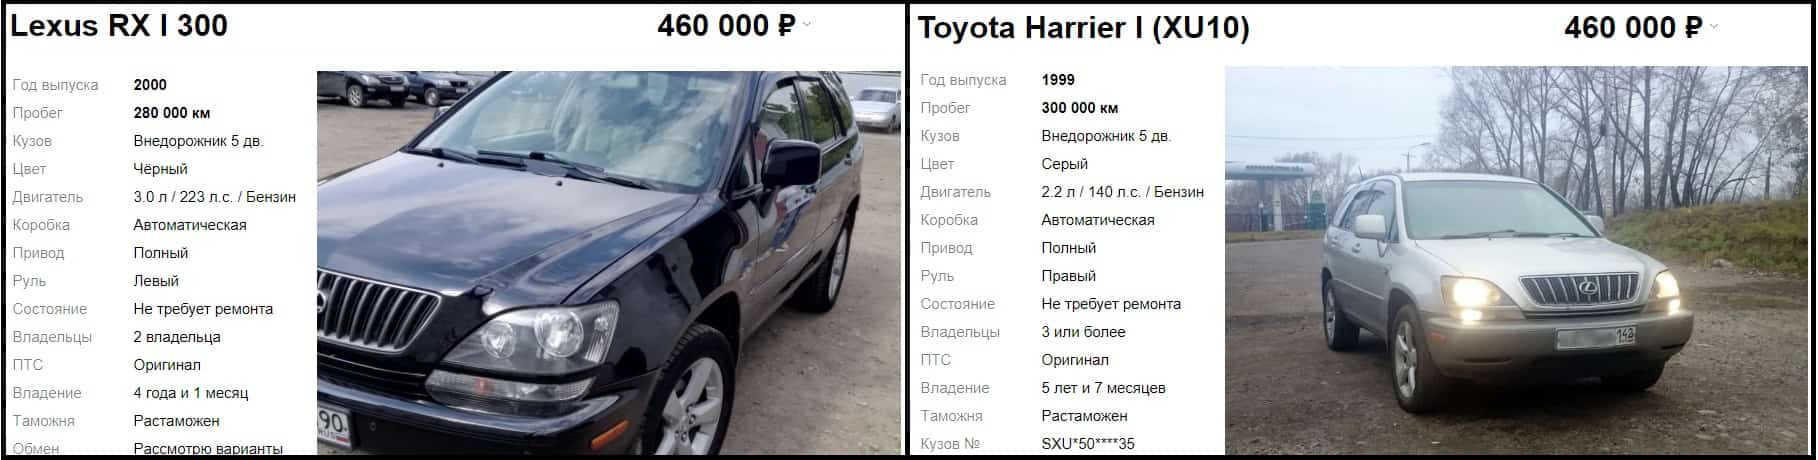 ceny-Toyota-Lexus